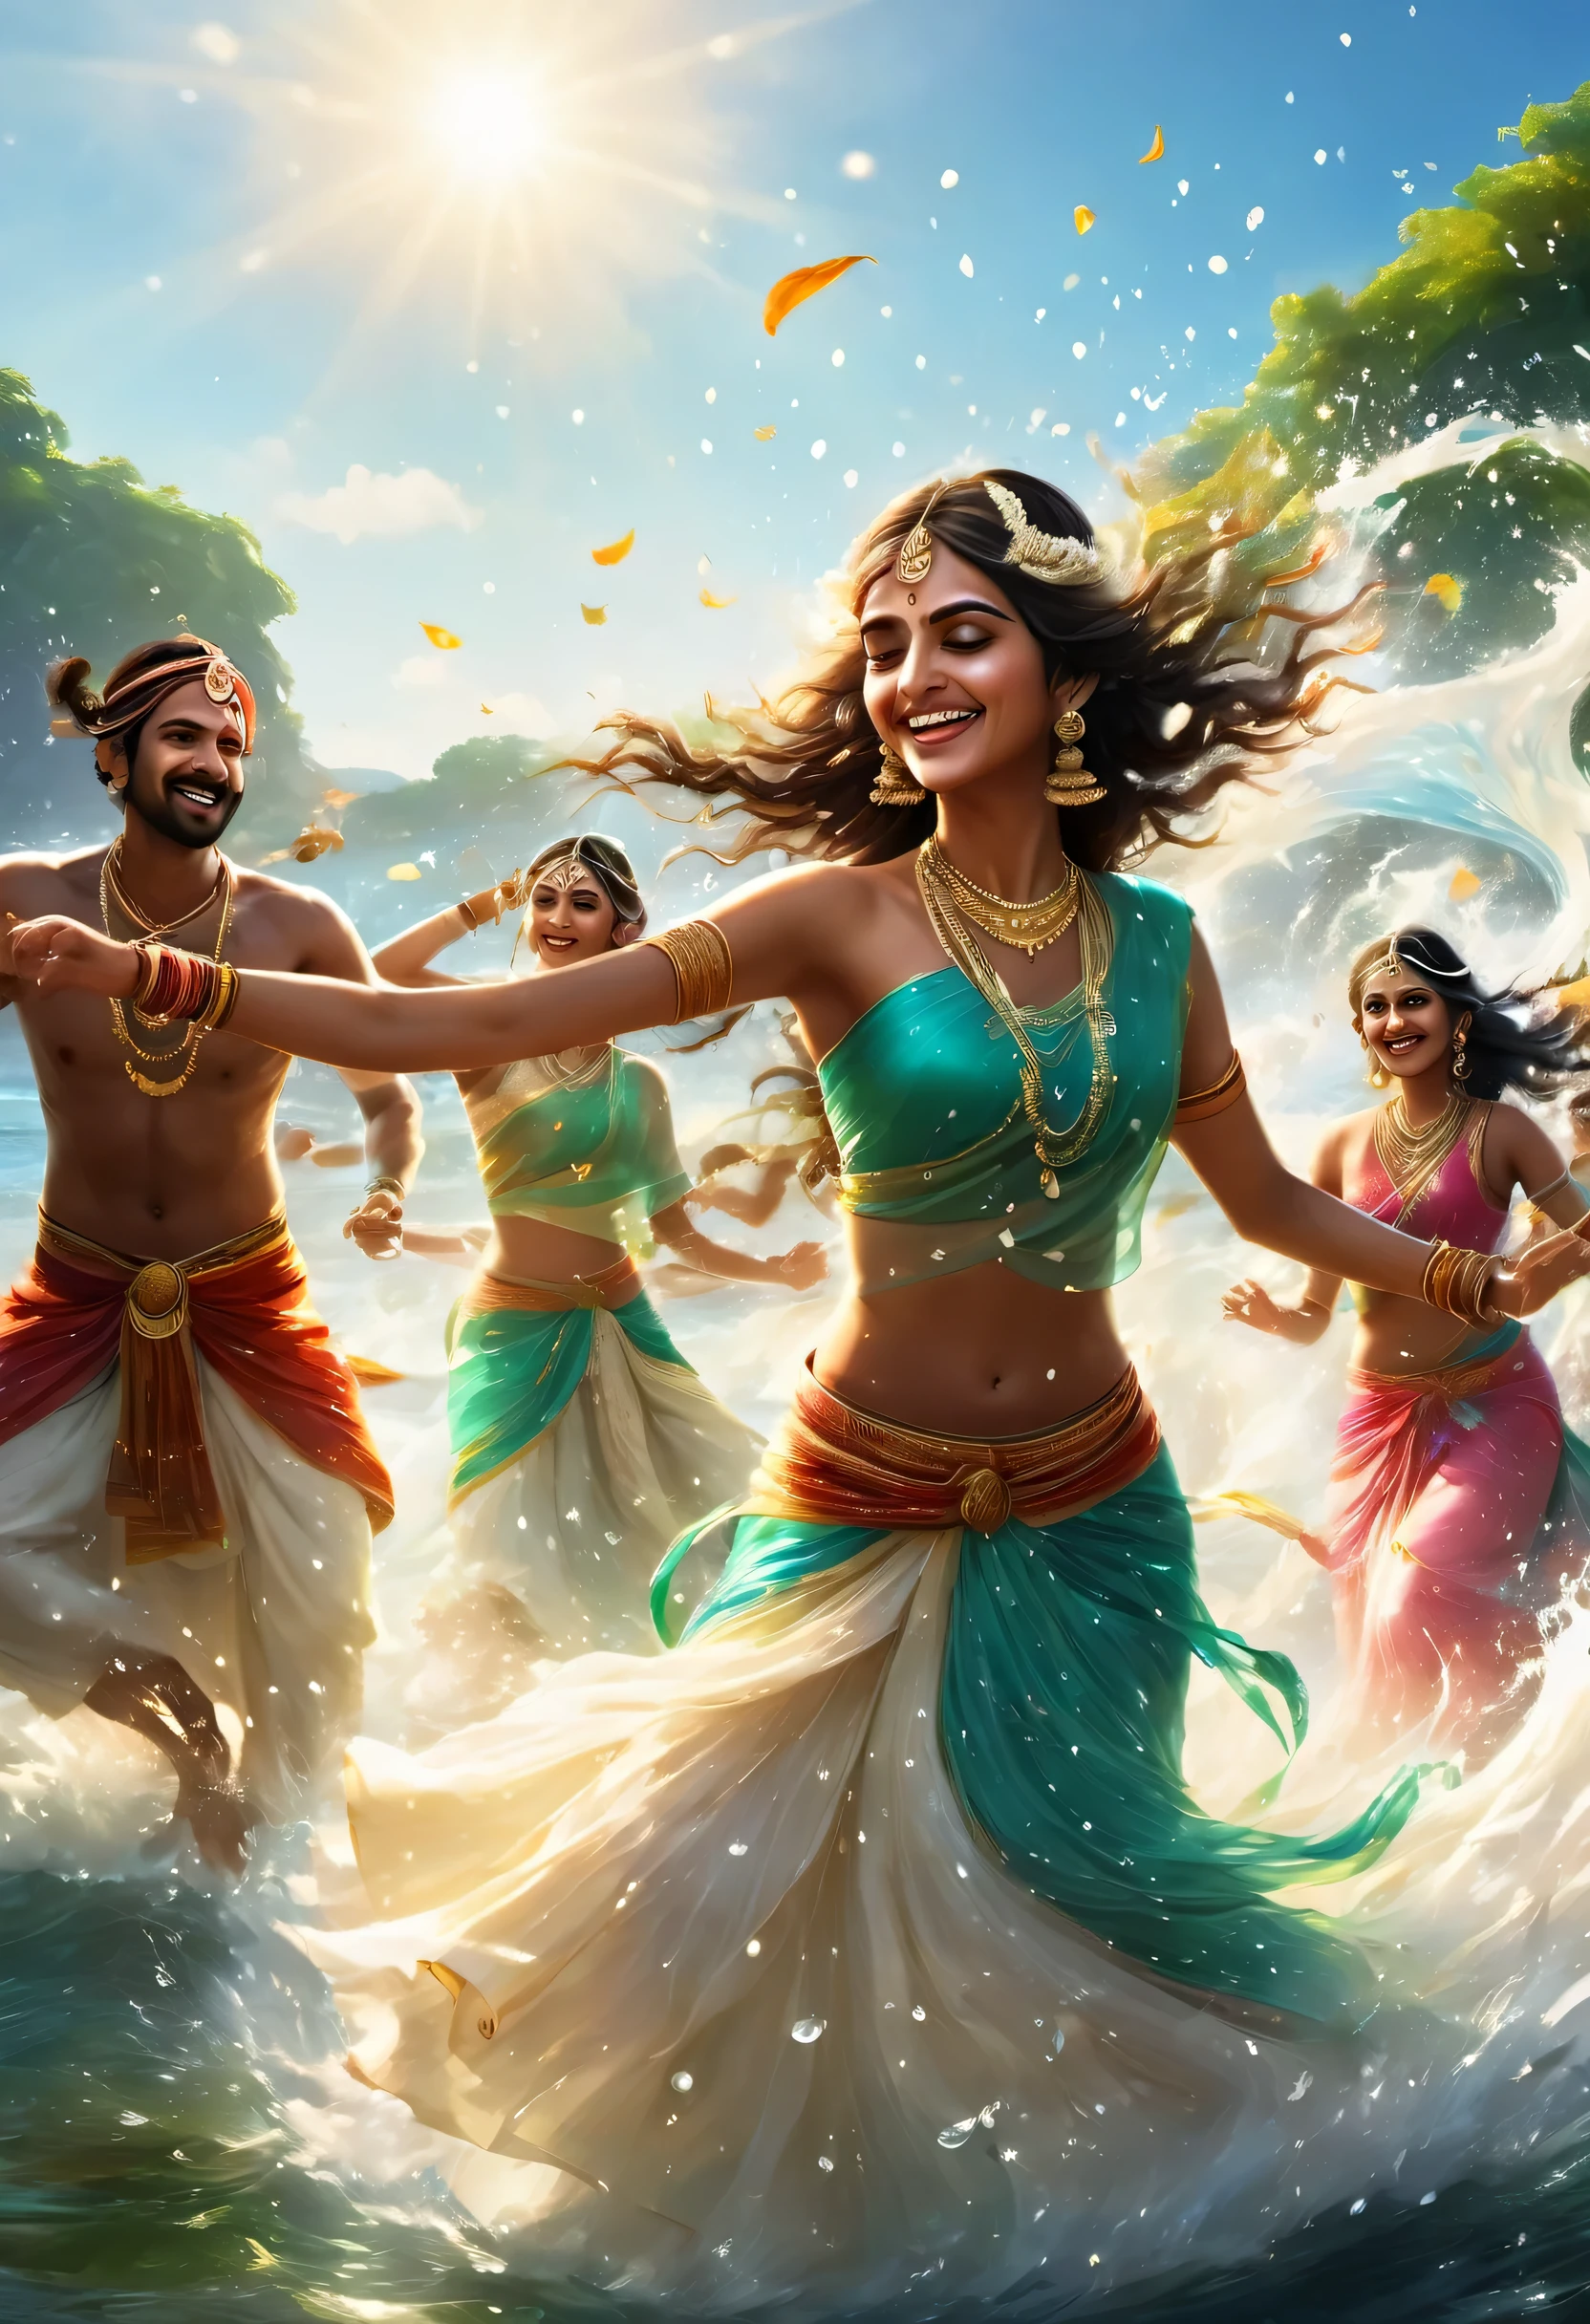 踊る印度人:100人,印度電影風格,海背景,在淺灘跳舞,水花飞溅,舞动的水滴,看起來很有趣,幾乎可以聽到音樂的風景,感覺節奏,微笑,印度人,一起跳舞,快樂的,渲染,虛幻引擎,美麗的光影,照片真實感,逼真的質感,閃光,让我&#39;一起跳舞,超級令人興奮的場景,錯綜複雜的細節